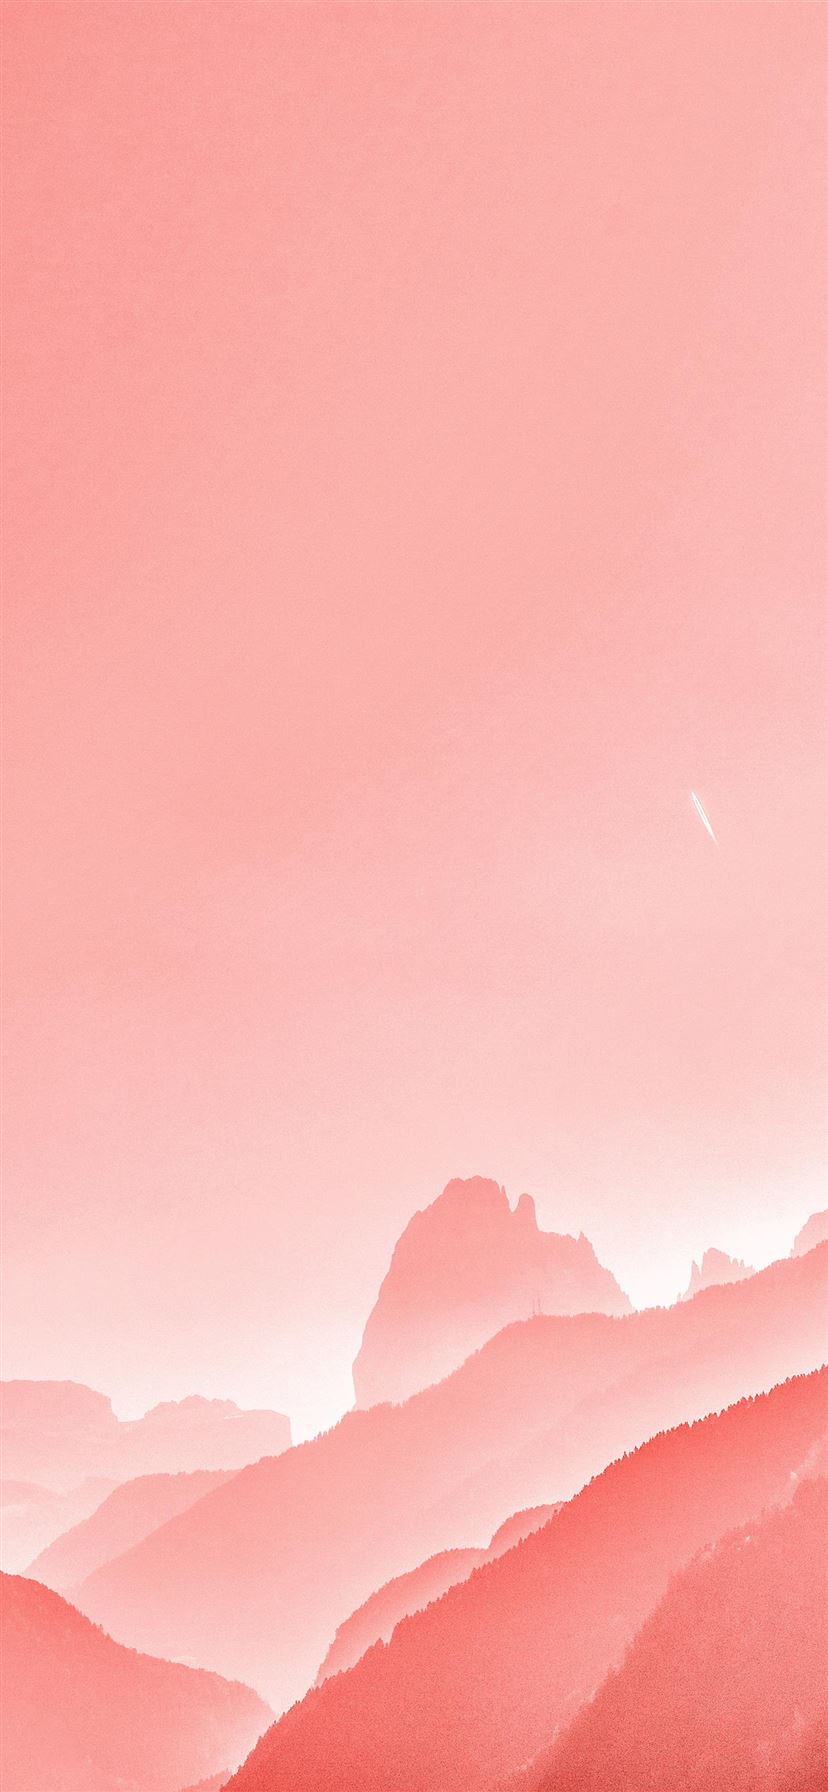 19+] Iphone 11 Pink Wallpapers - WallpaperSafari